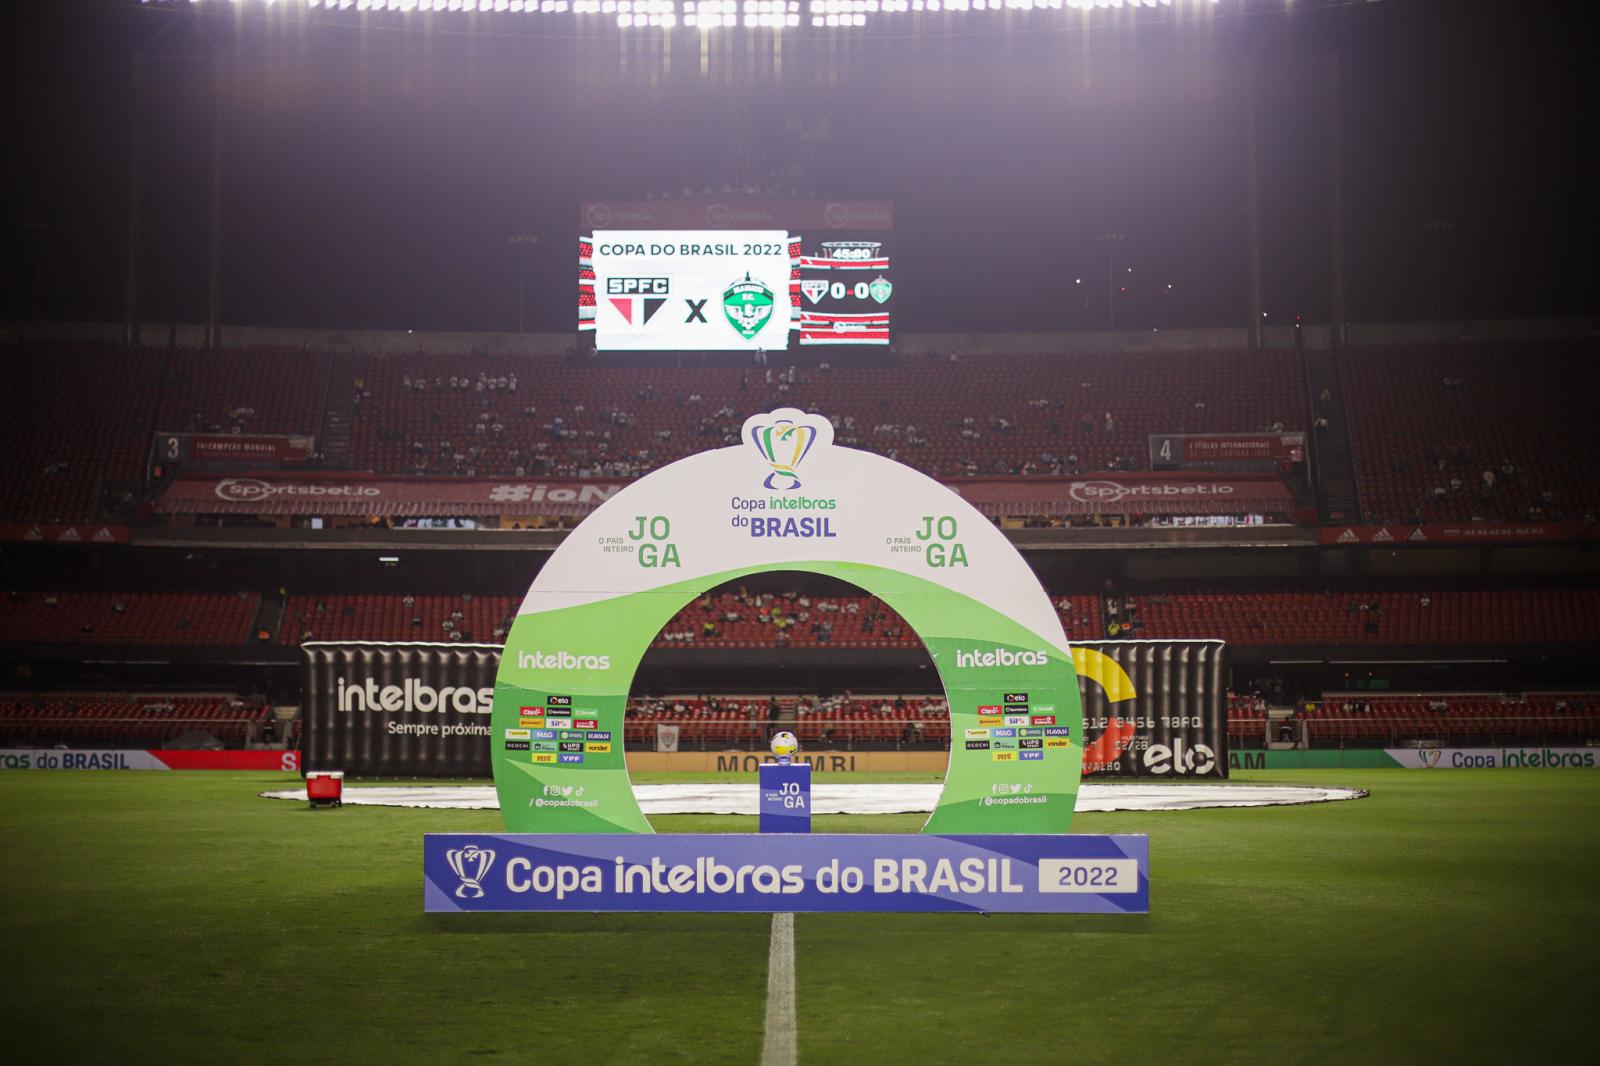 Técnico Paulo Henrique projeta sorteio da Copa do Brasil; conheça prováveis adversários do Manaus FC